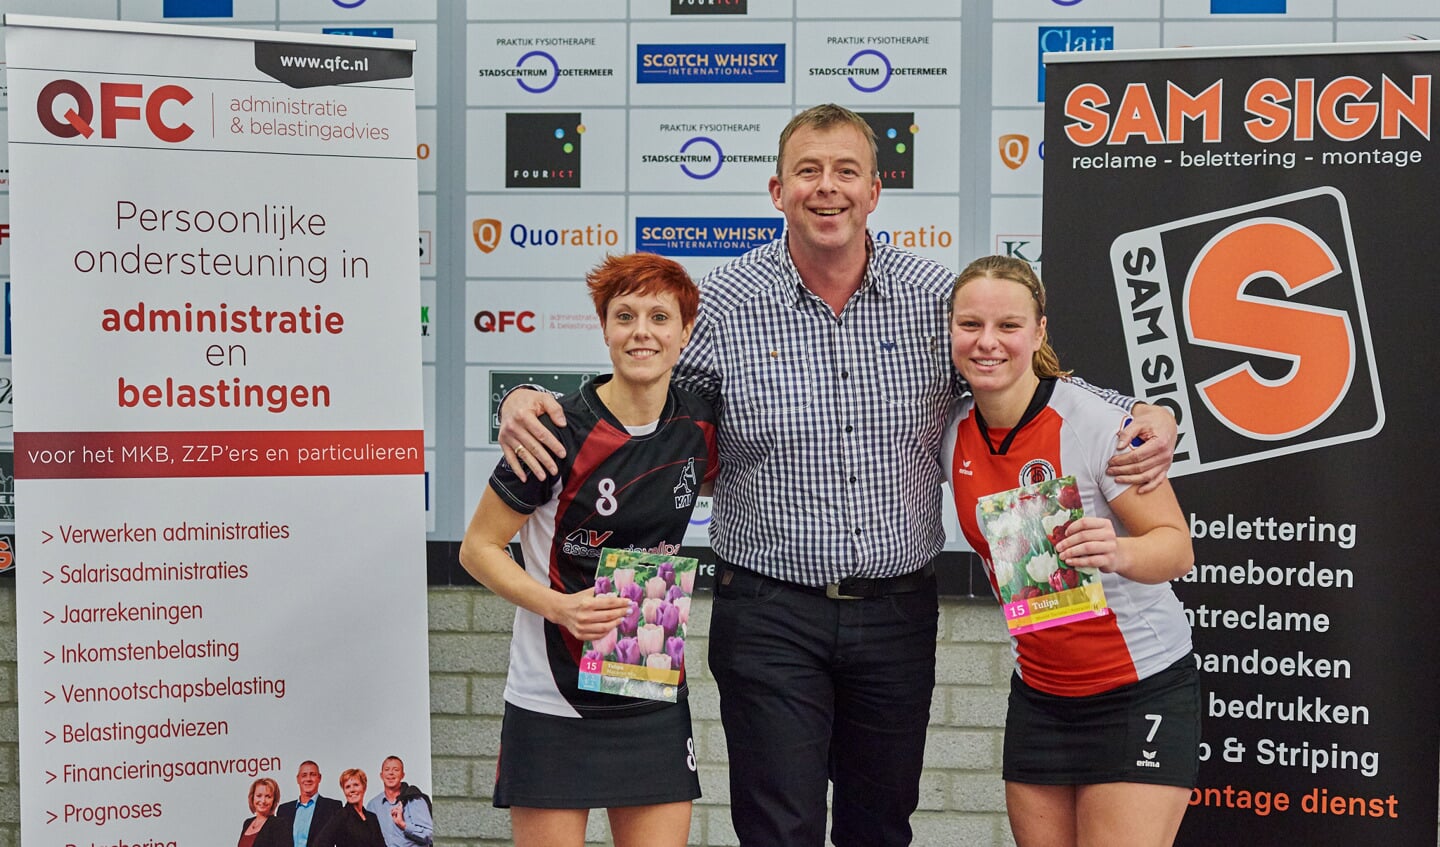 Sponsor Peter Boeren reikt de prijzen uit aan de beste speelsters van de wedstrijd. | Foto: Rene van Dam / www.rvdam.nl